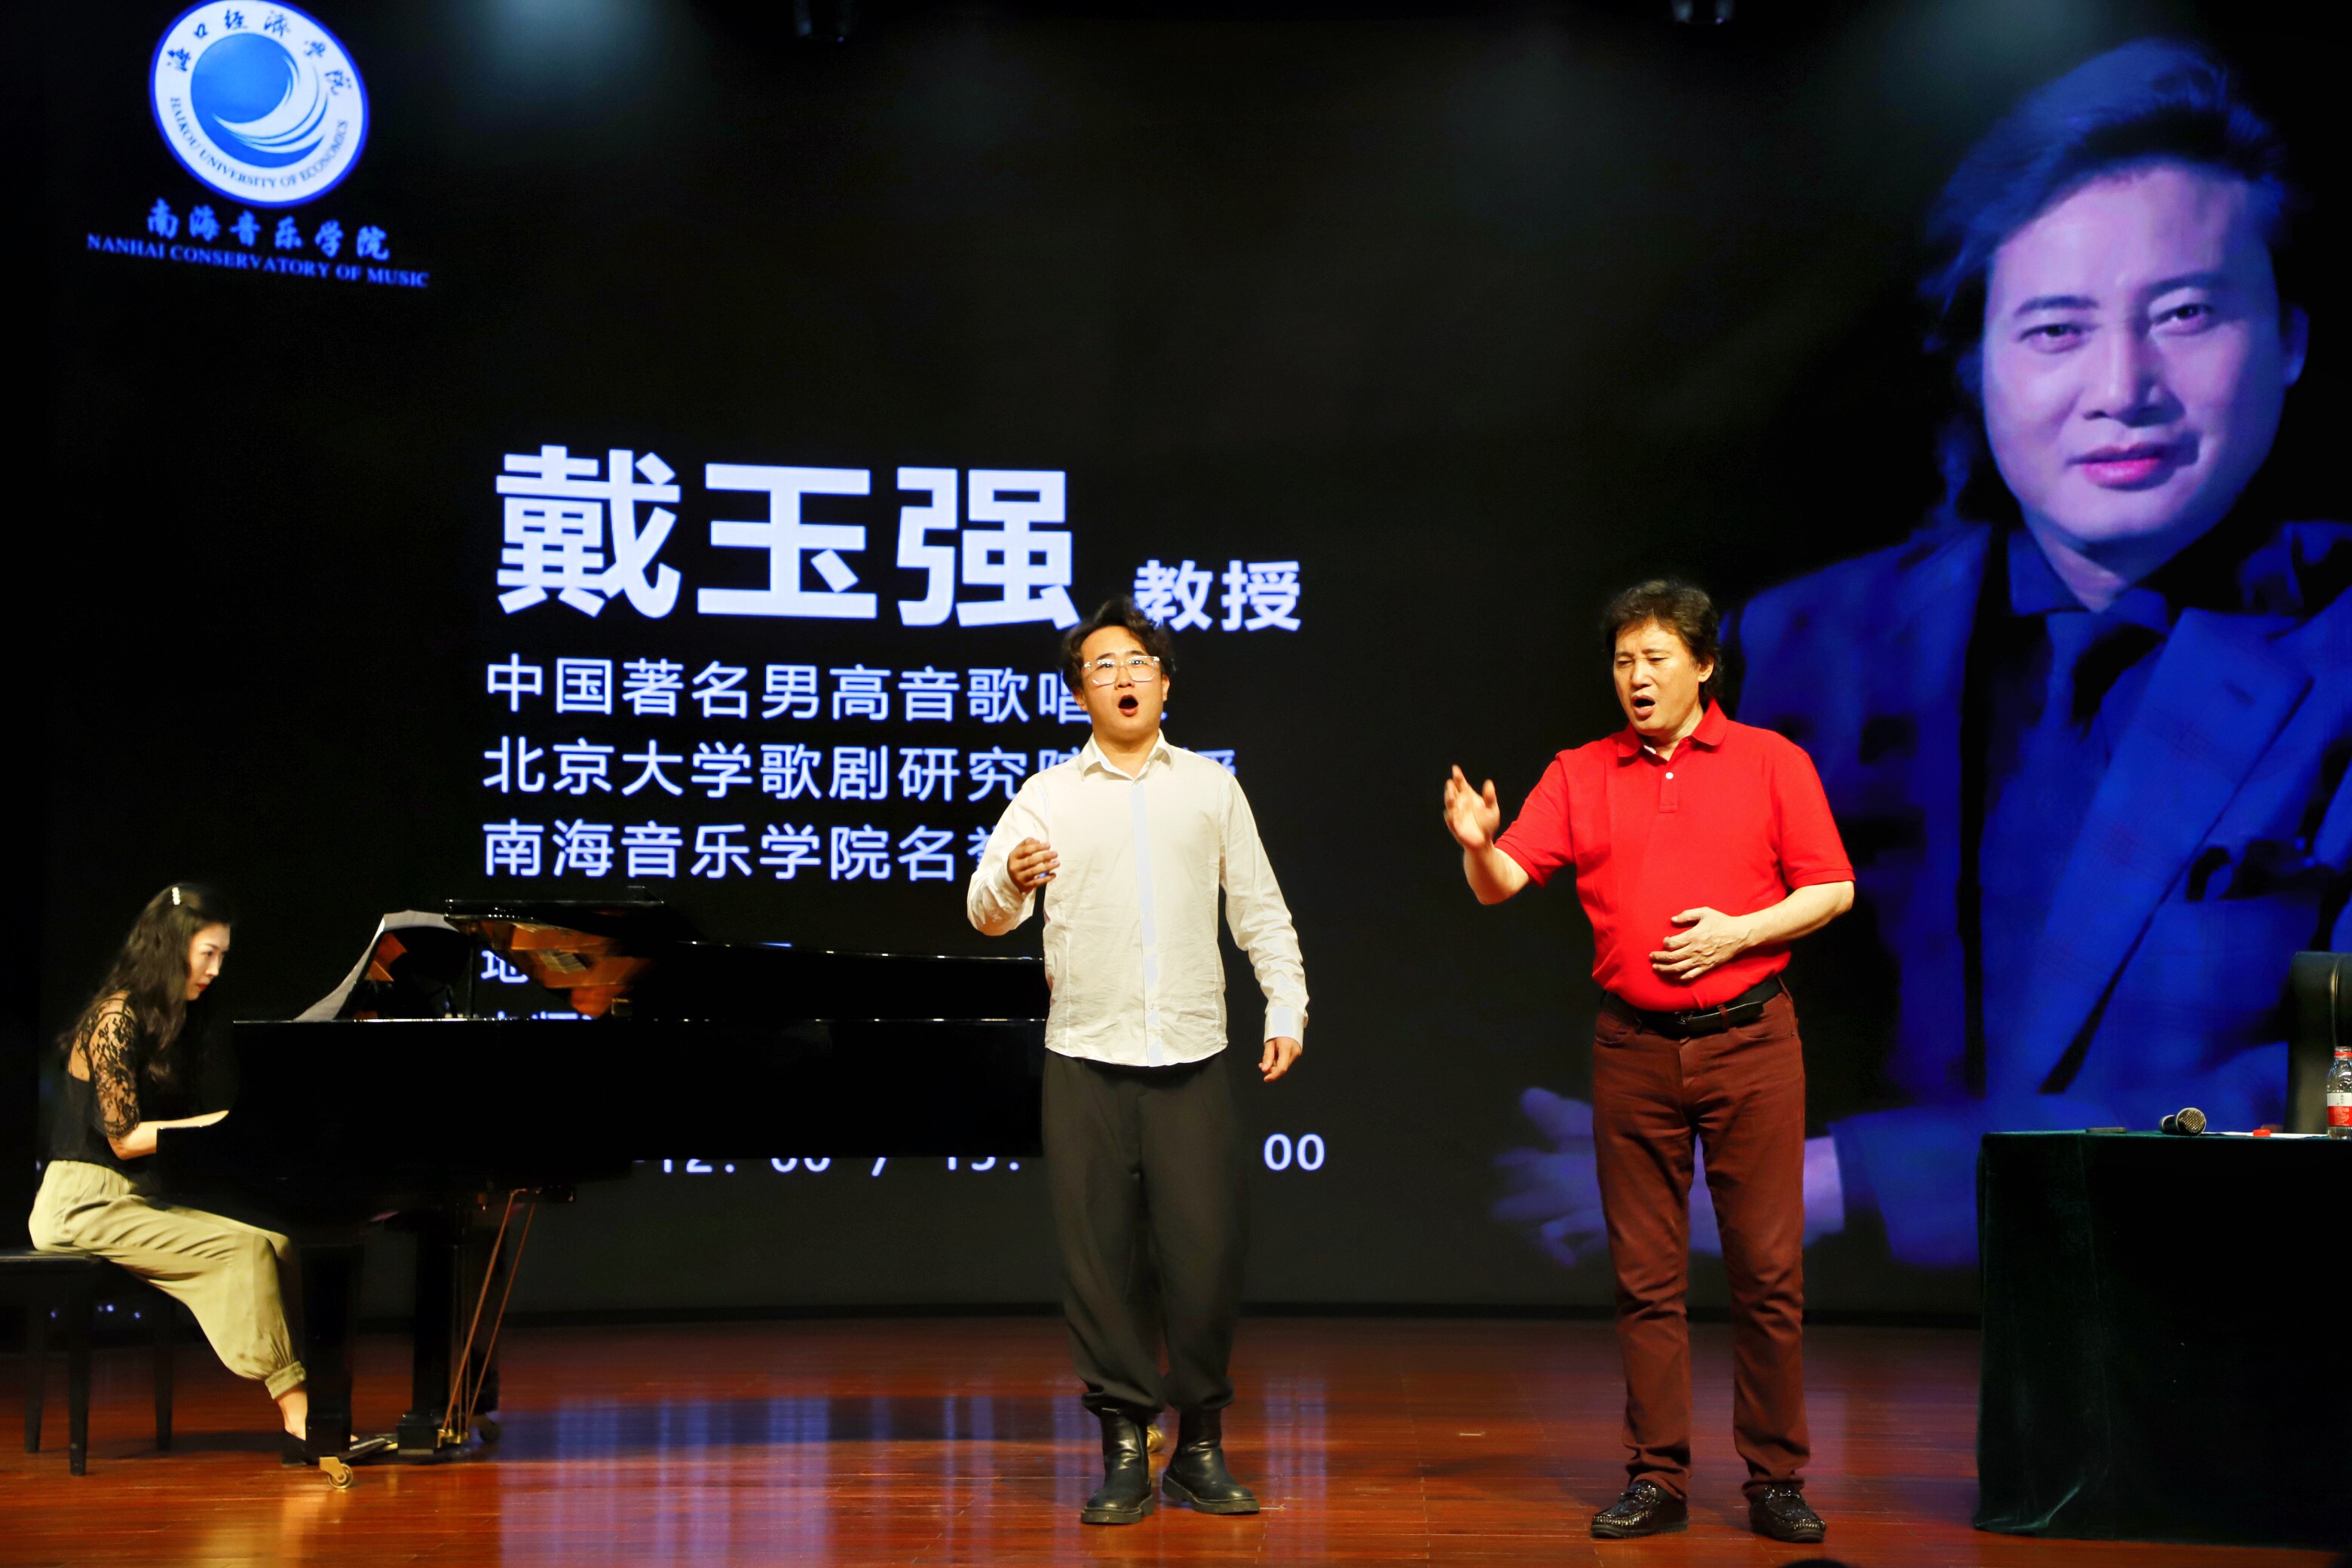 中国著名男高音歌唱家戴玉强教授莅临南音授课